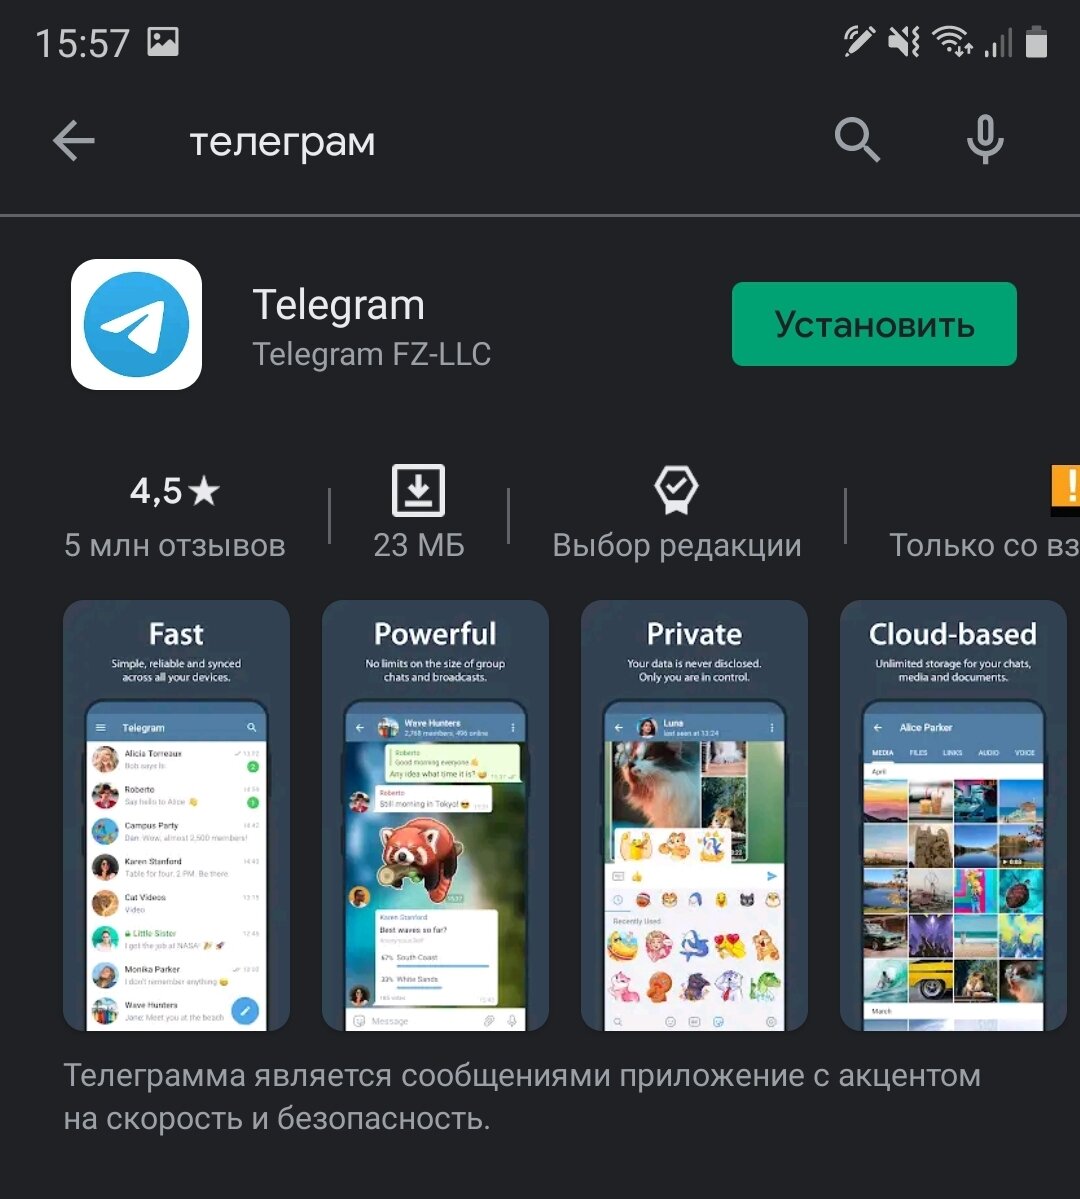 Скачать телеграмм бесплатно на андроид на русском и установить без регистрации бесплатно фото 50